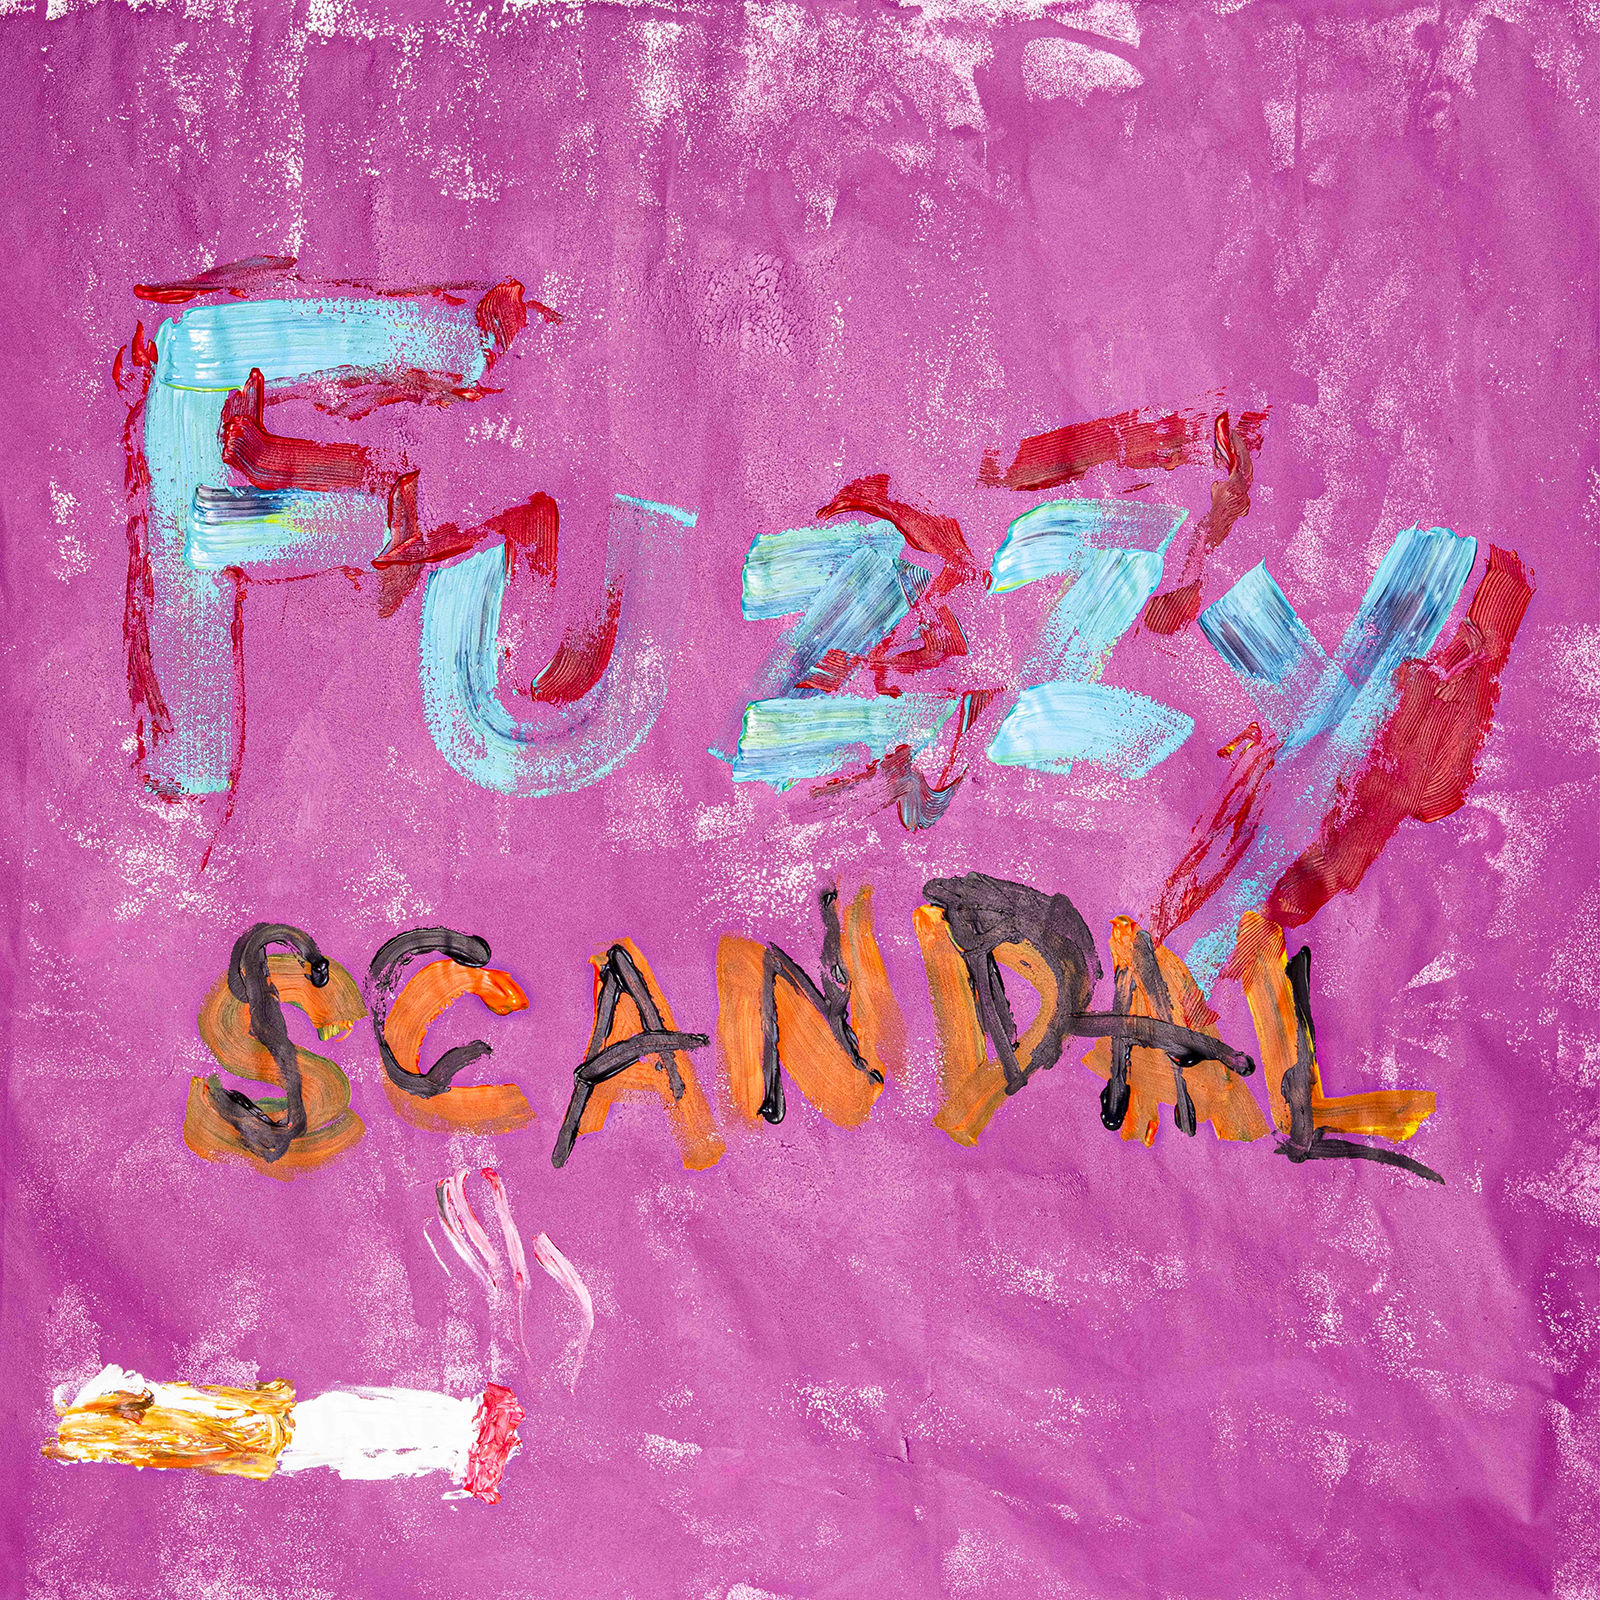 fuzzy - Fuzzy Lyrics 5d3fe289b8261-S8580-SCANDAL-Fuzzy-5d3fe289df6a2